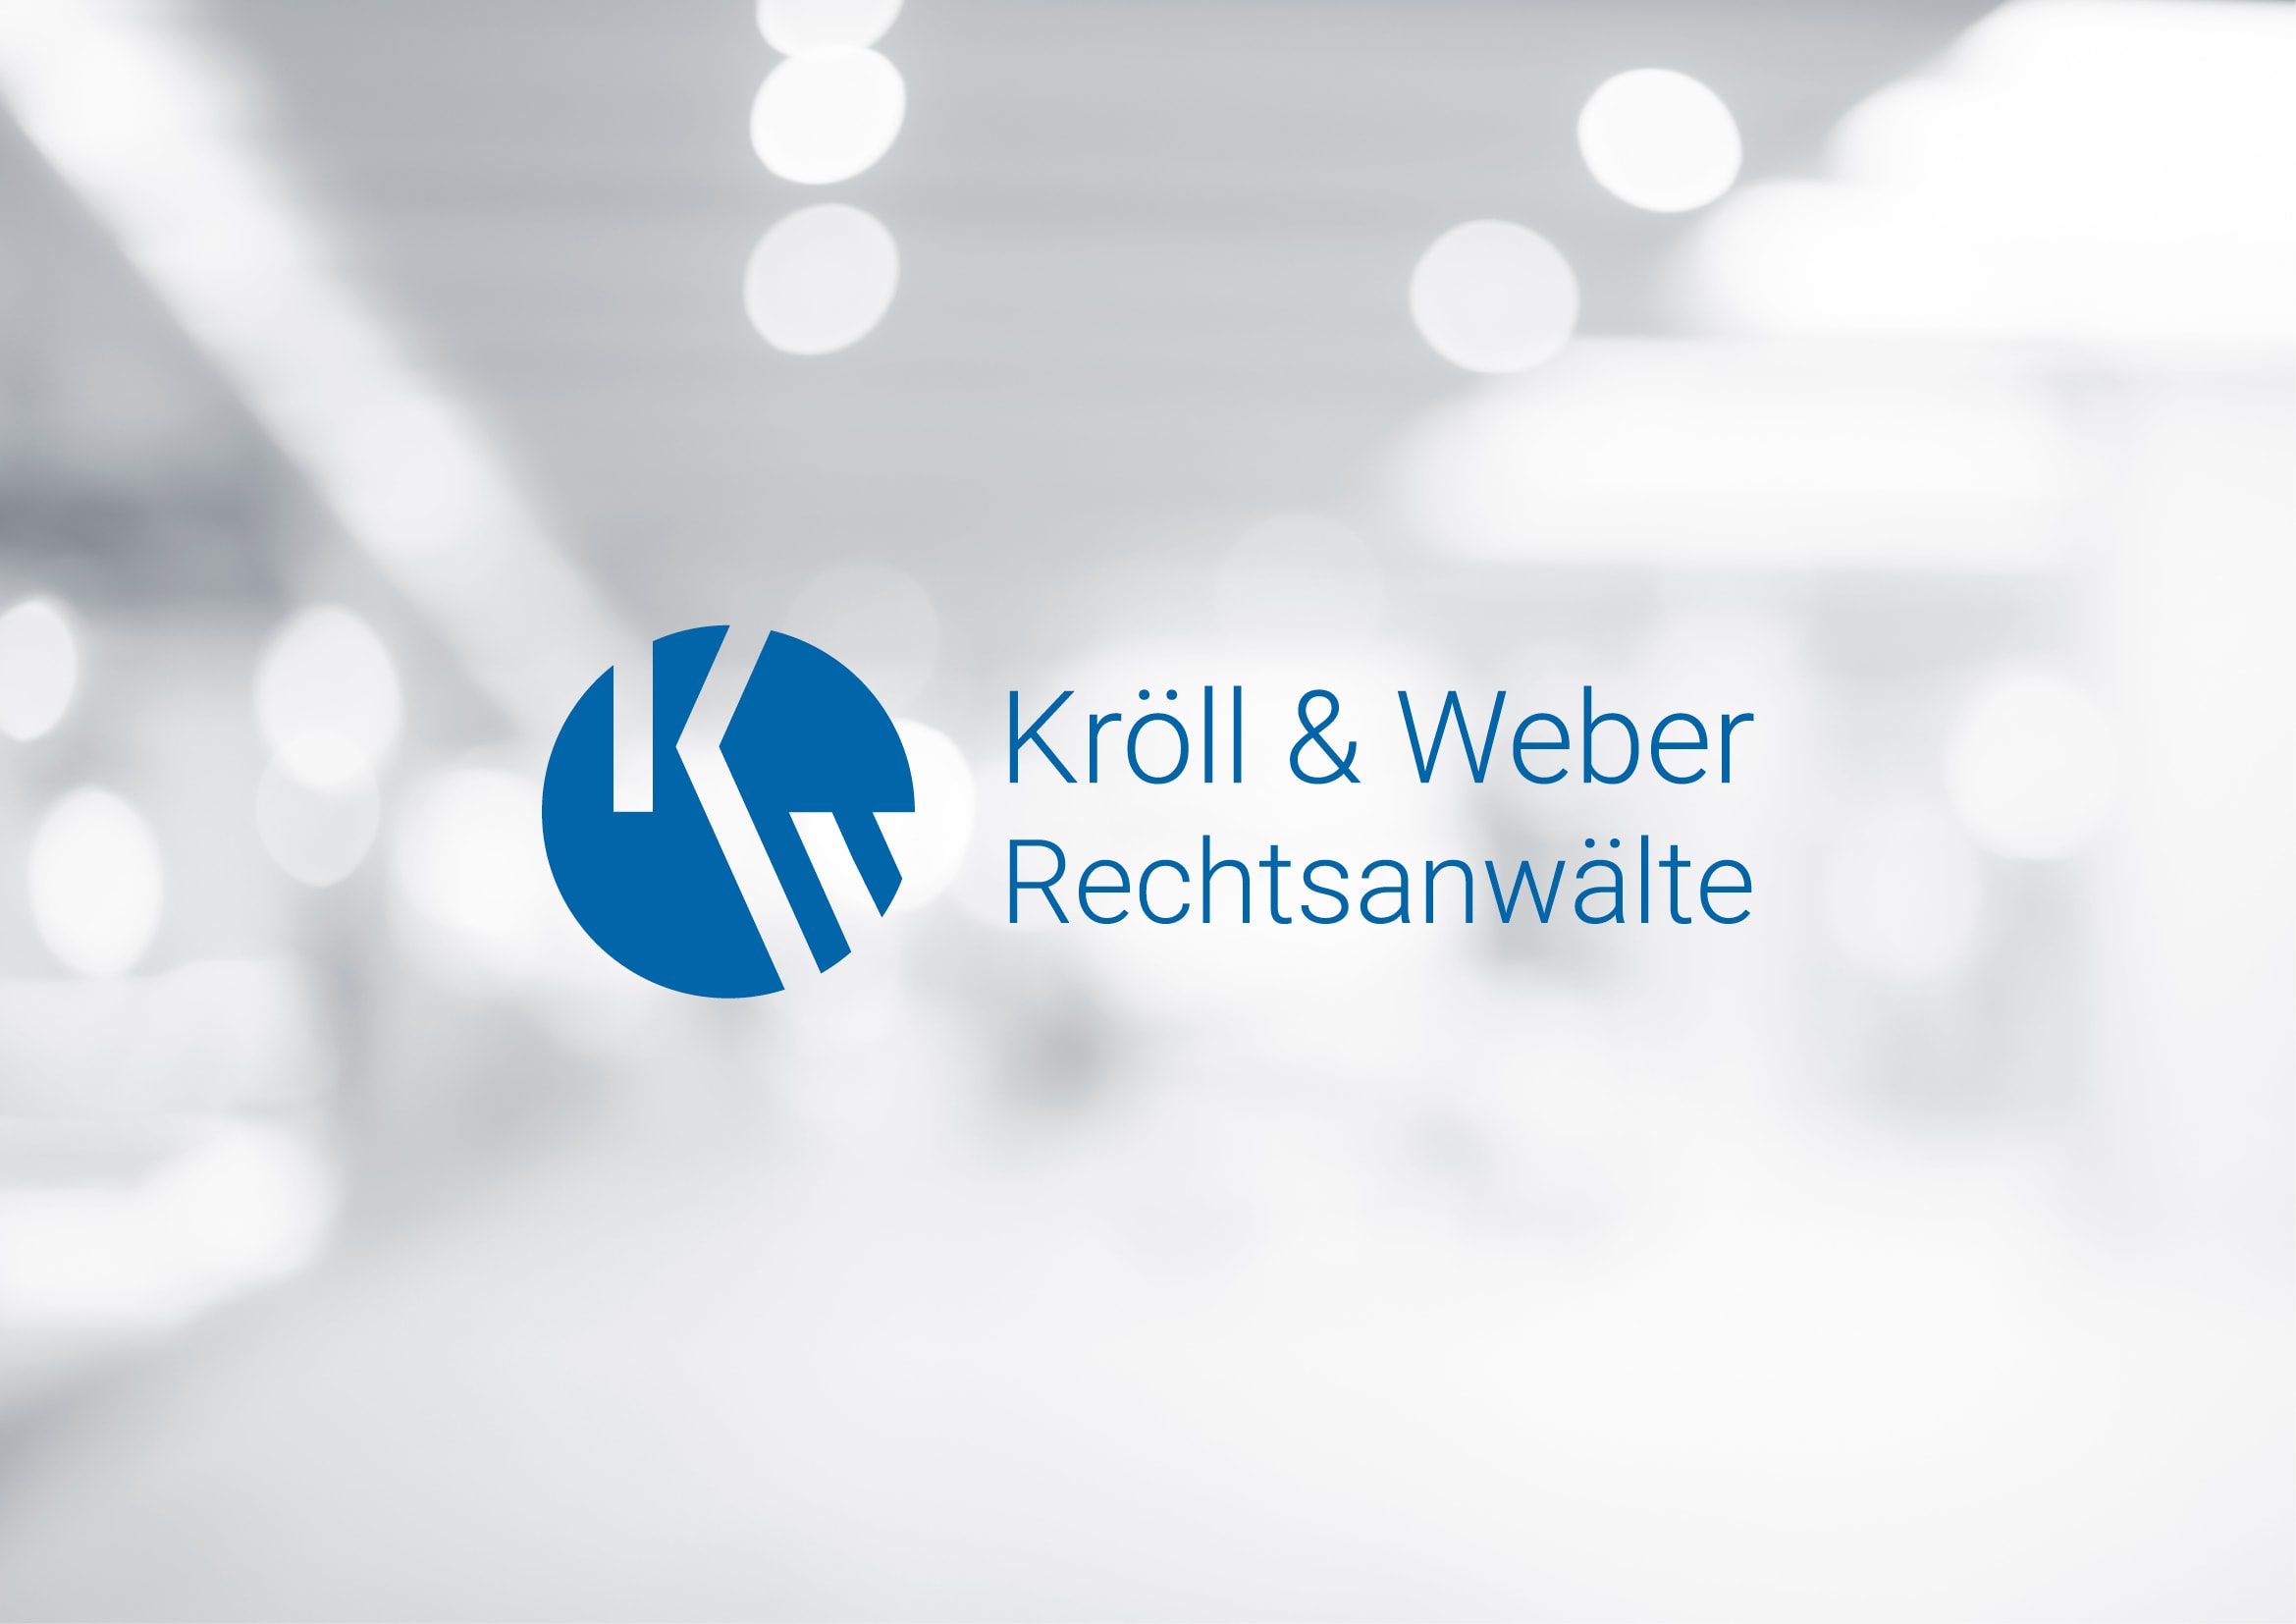 Logo- und Corporate Design Entwicklung für Kröll & Weber Rechtsanwälte durch Ronald Wissler Visuelle Kommunikation